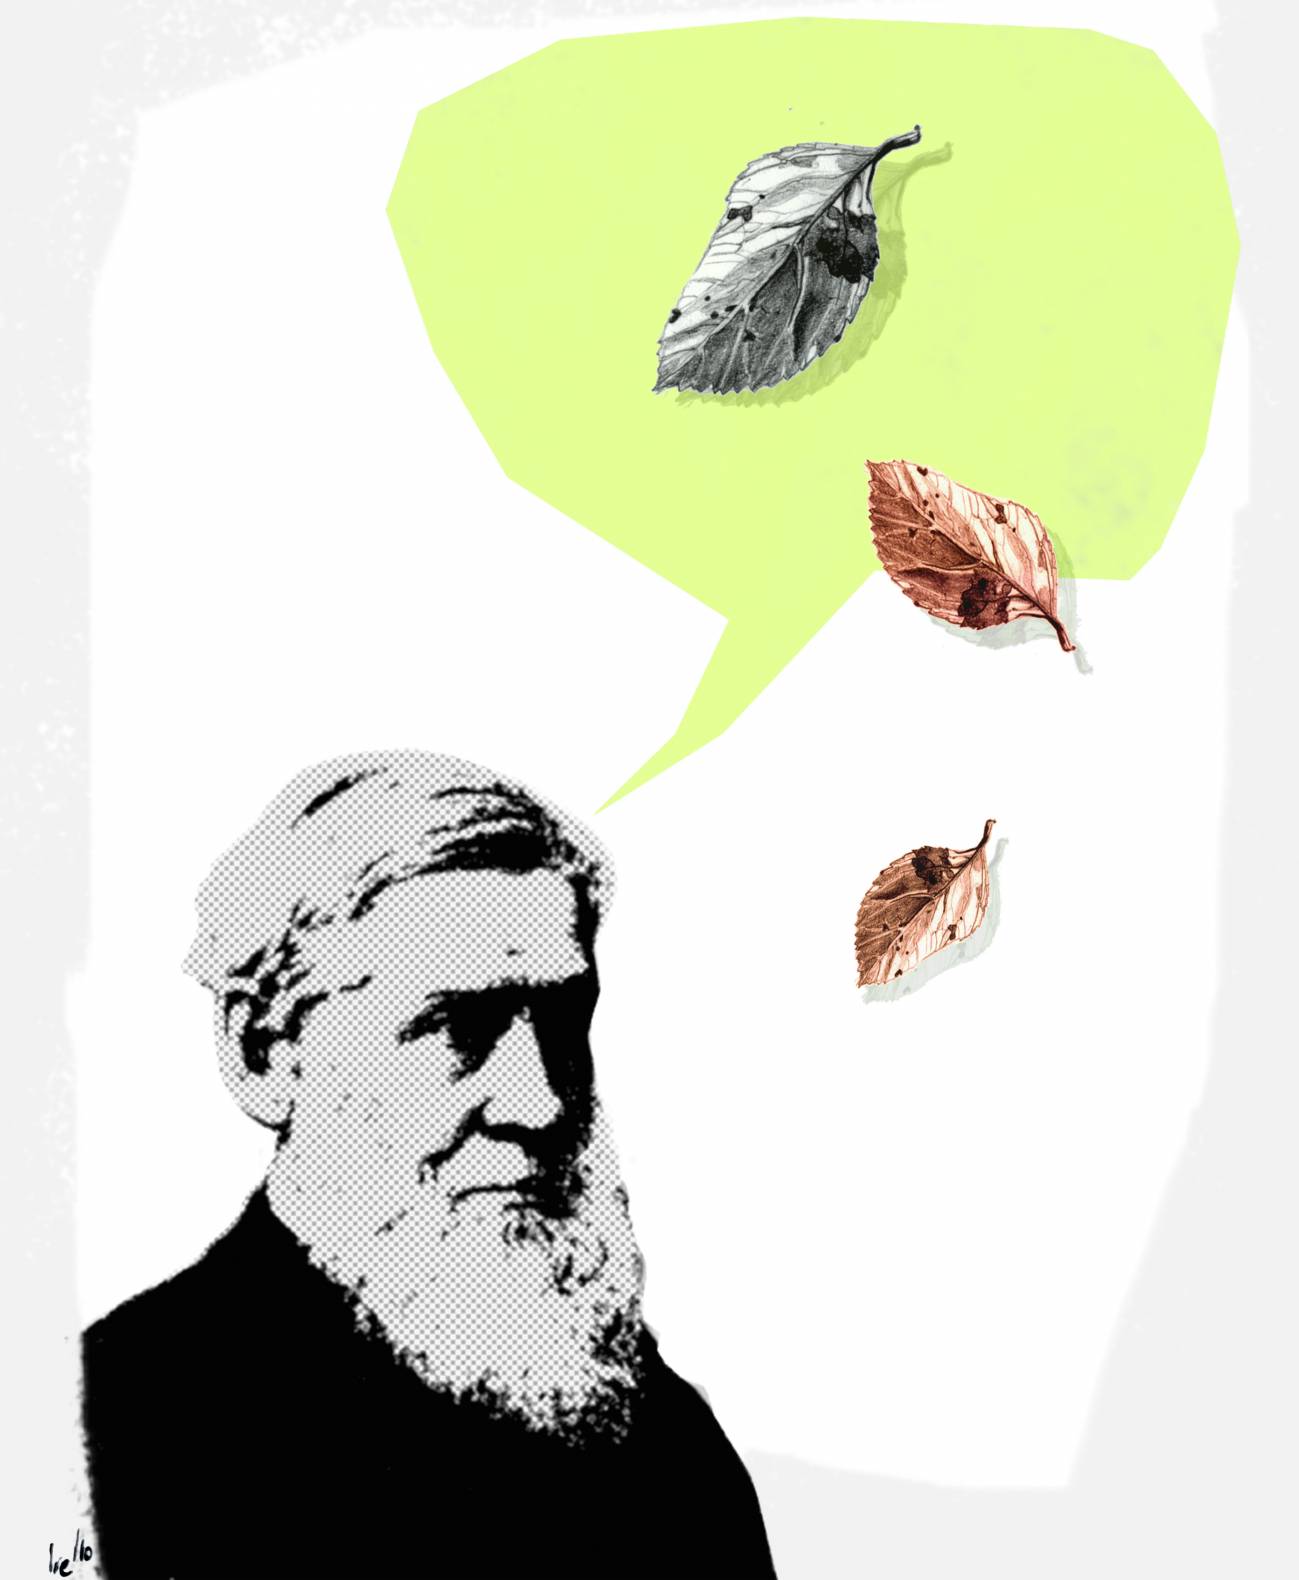 Hoy se cumplen 200 años del nacimiento de Asa Gray, naturalista y médico, considerado uno de los botánicos más importantes de la historia